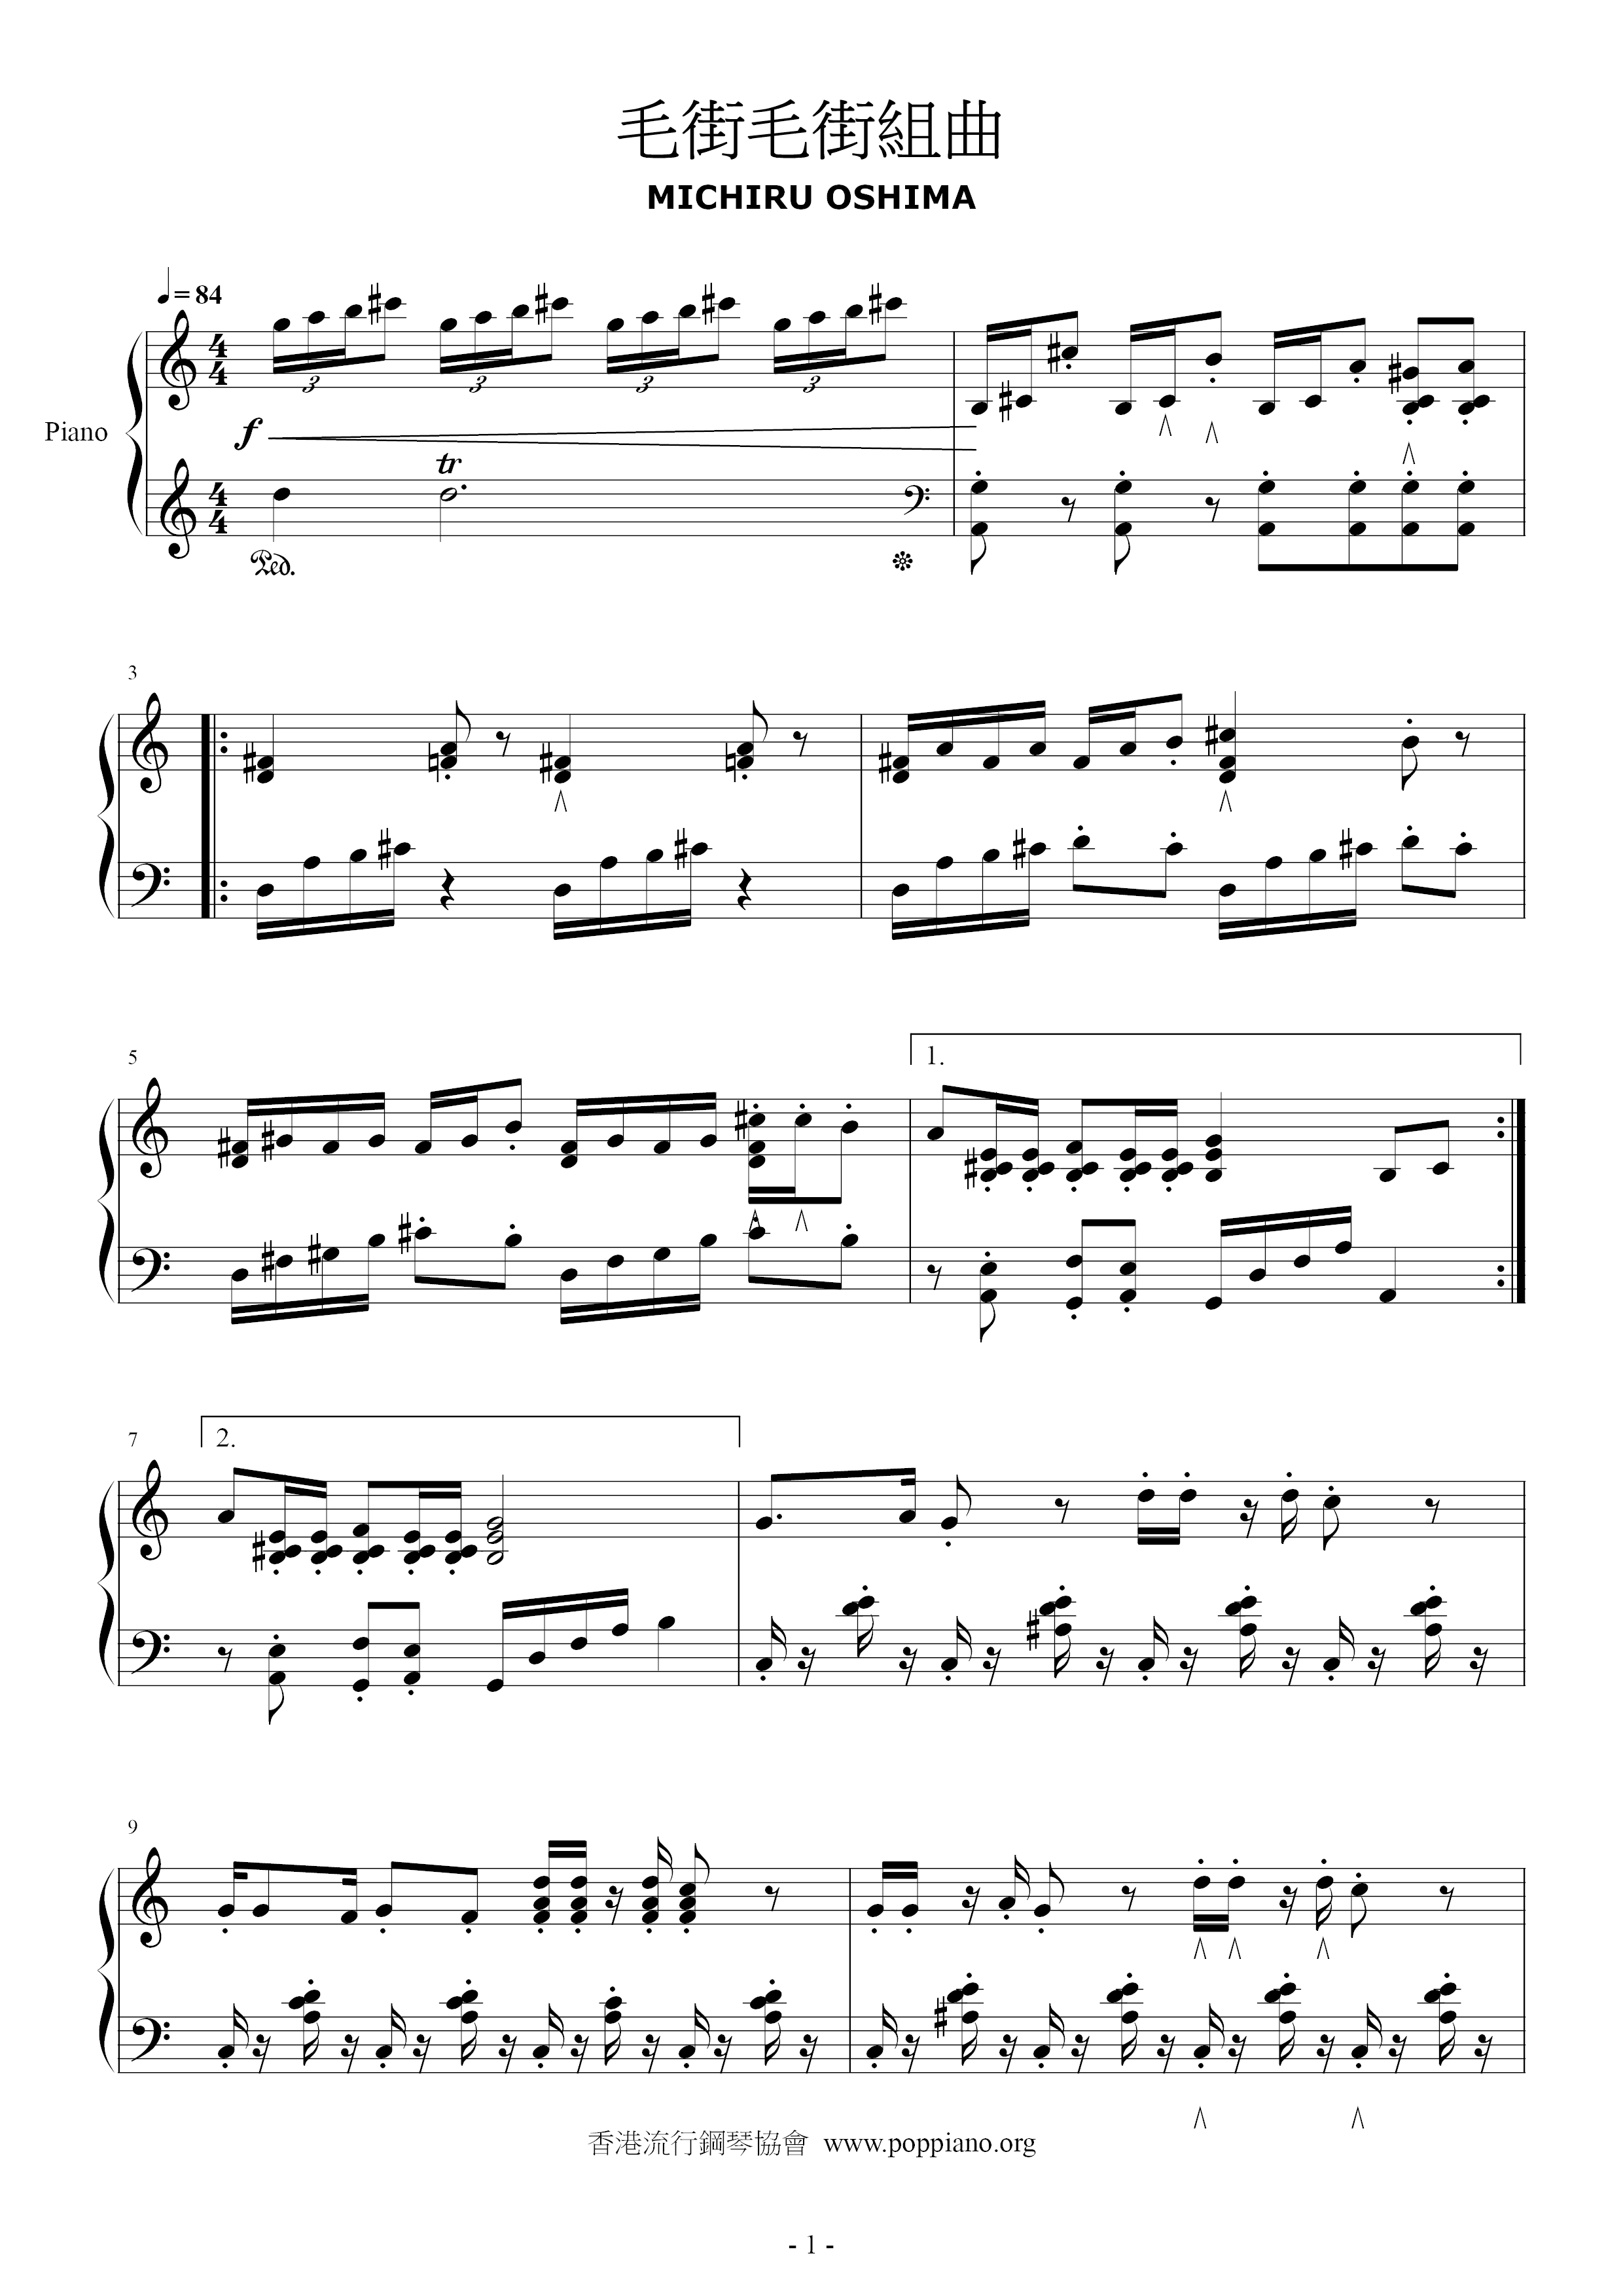 Maojie Maojie Suite Score